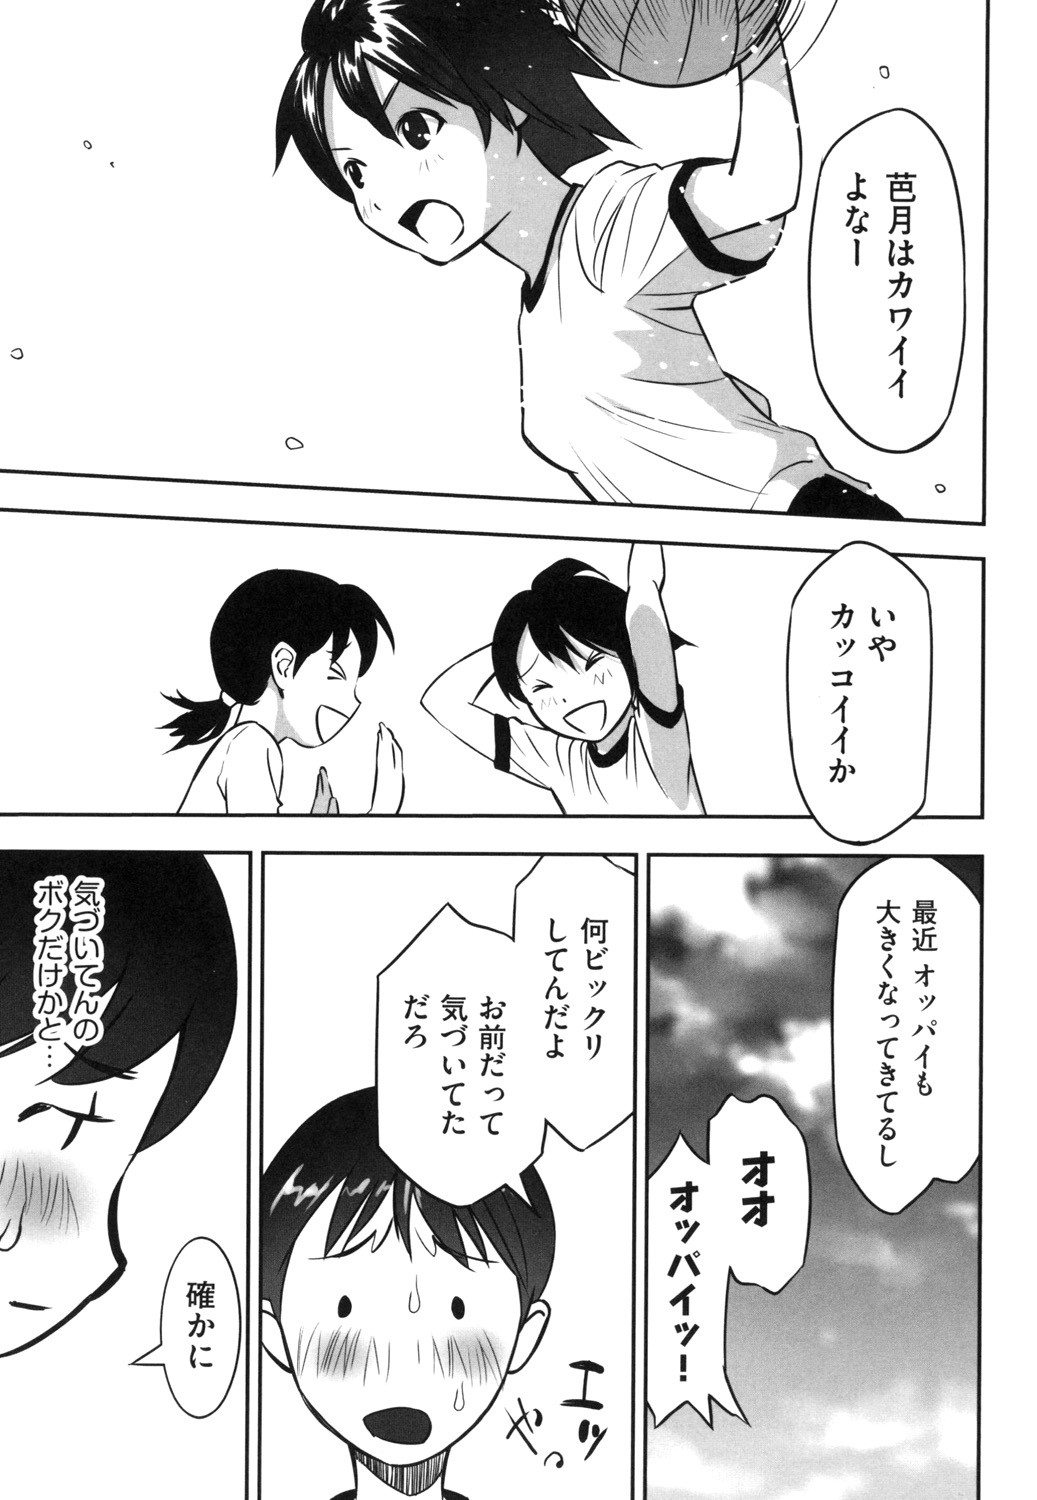 [Anthology] Shoujo Kumikyoku 13 [Digital] page 49 full